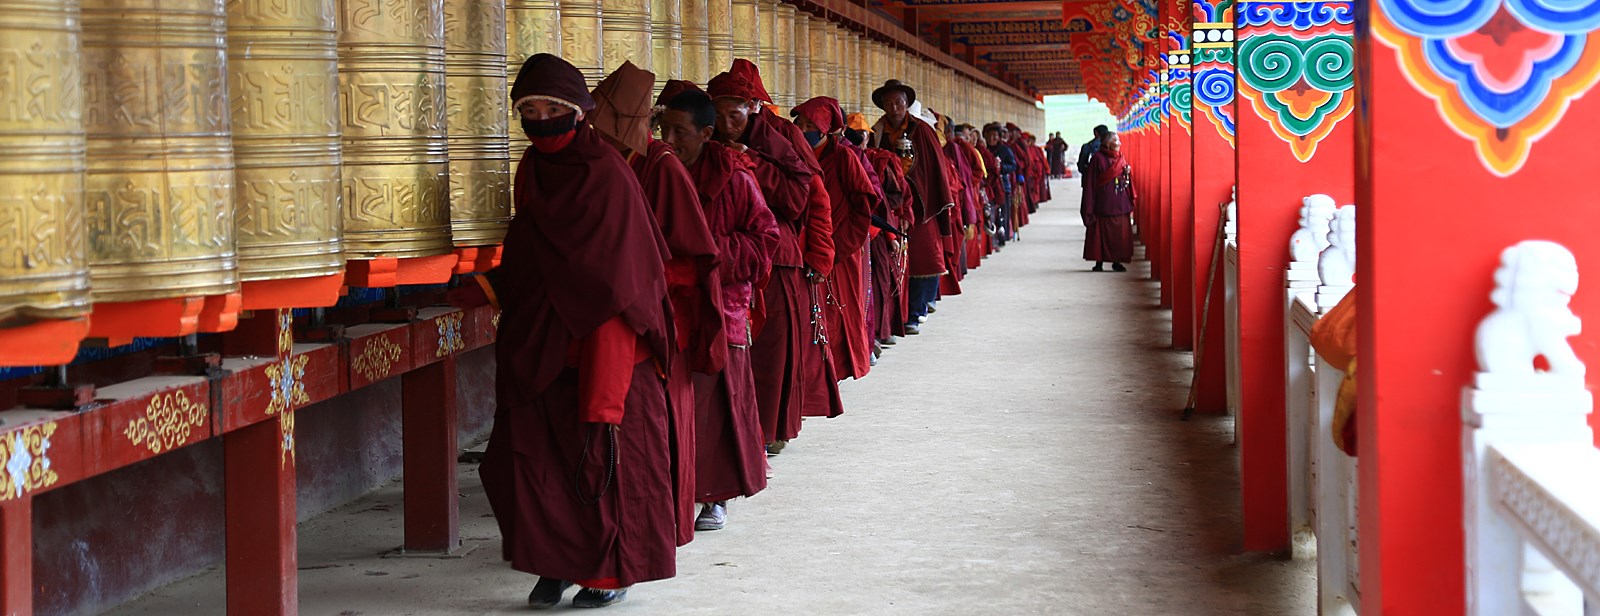 China Rental Car Tour to East Tibet Kham